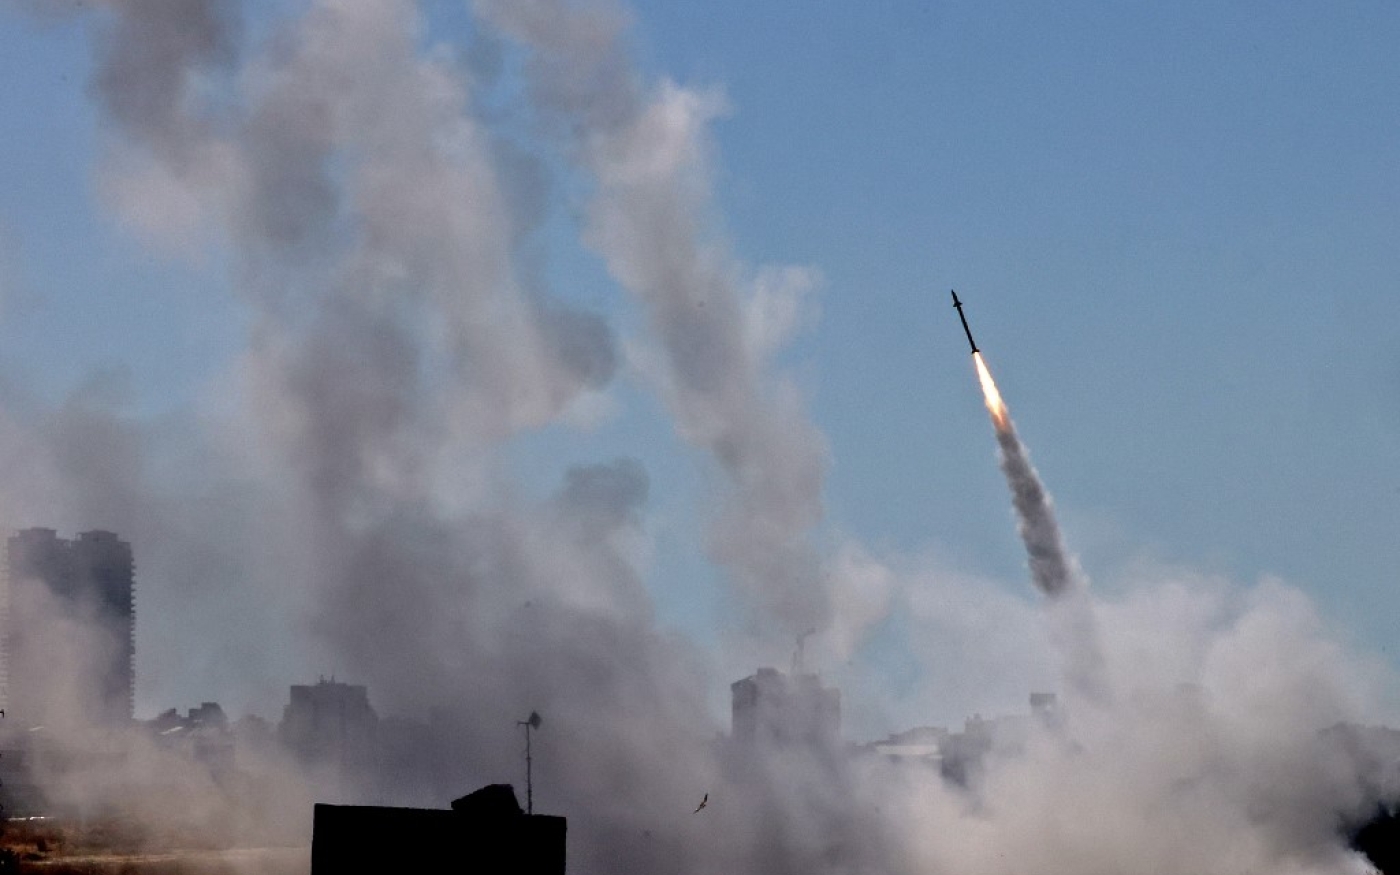 Le système de défense Dôme de fer est activé pour intercepter une roquette lancée depuis la bande de Gaza, le 12 mai 2021 (AFP/Emmanuel Dunand)